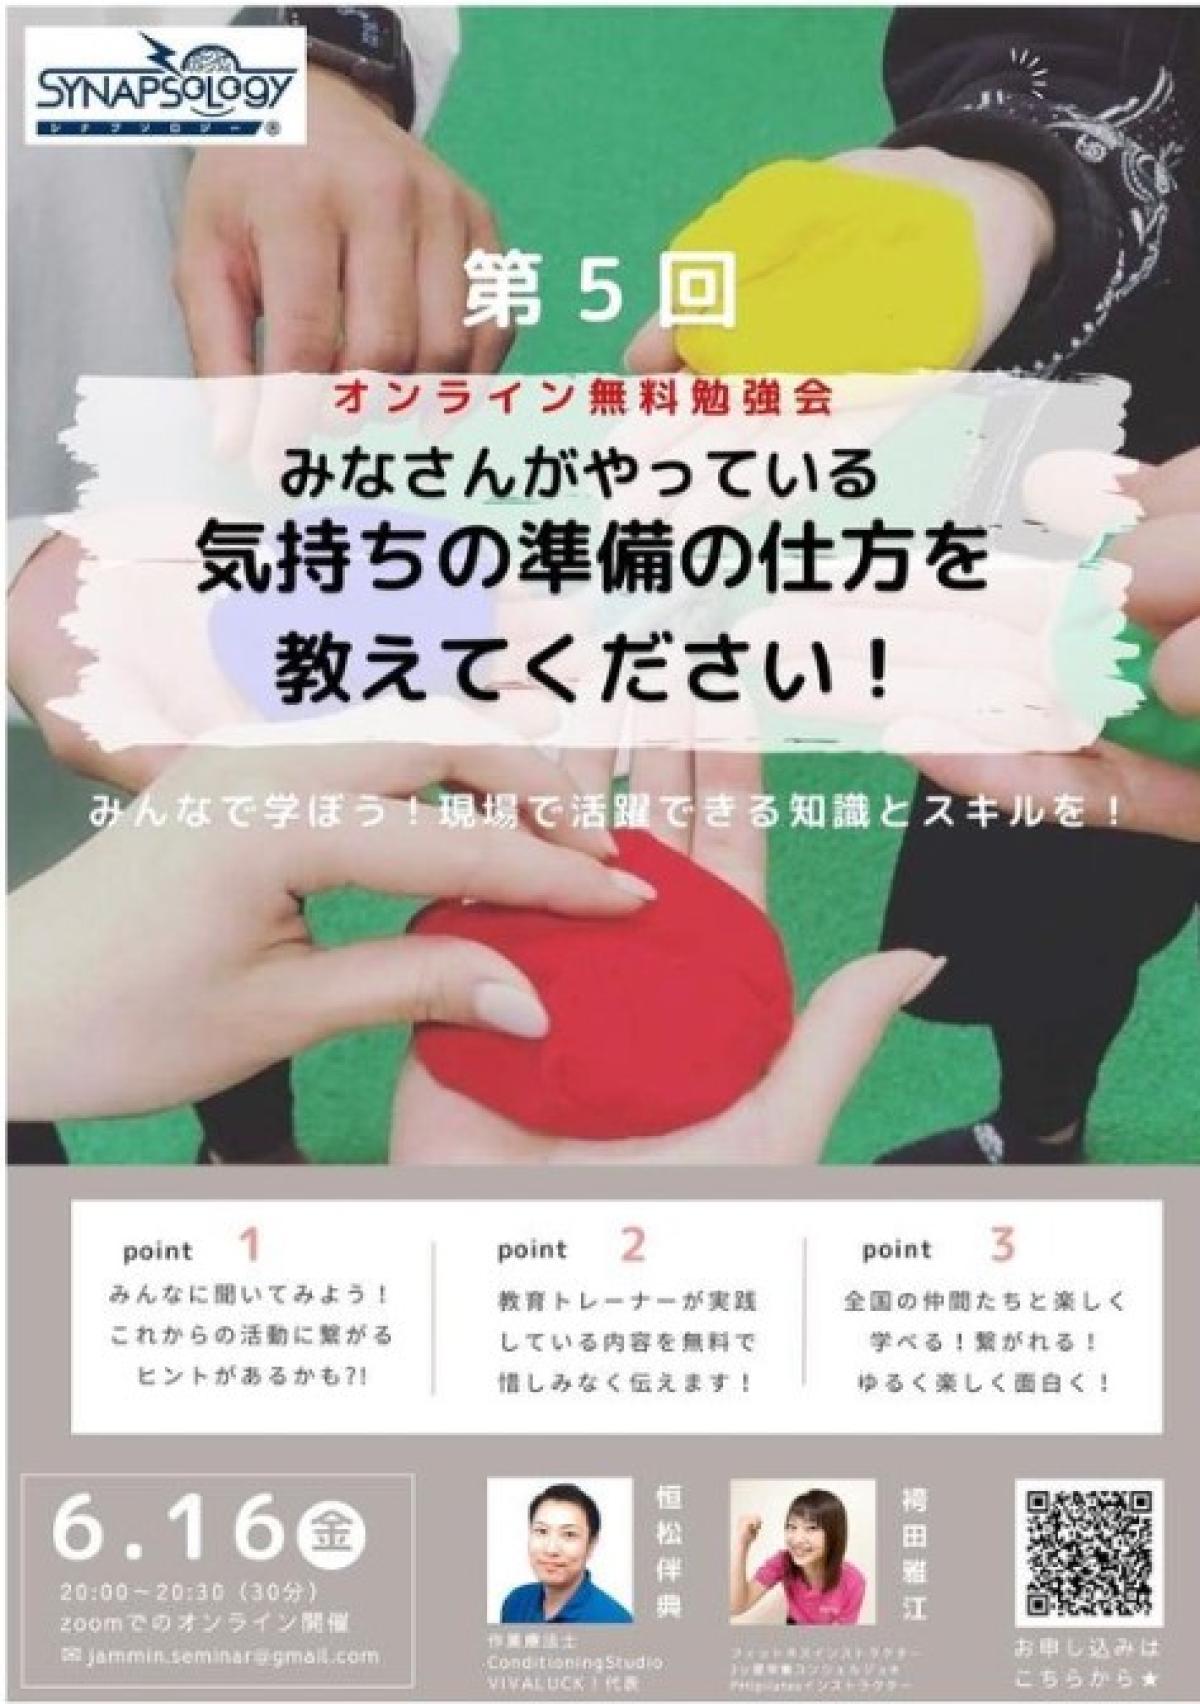 栄養コンシェルジュの資格を有する袴田雅江さんが、シナプソロジーインストラクターのための無料勉強会を開催します！【栄養 コンシェルジュ 取得後の活躍・仕事】